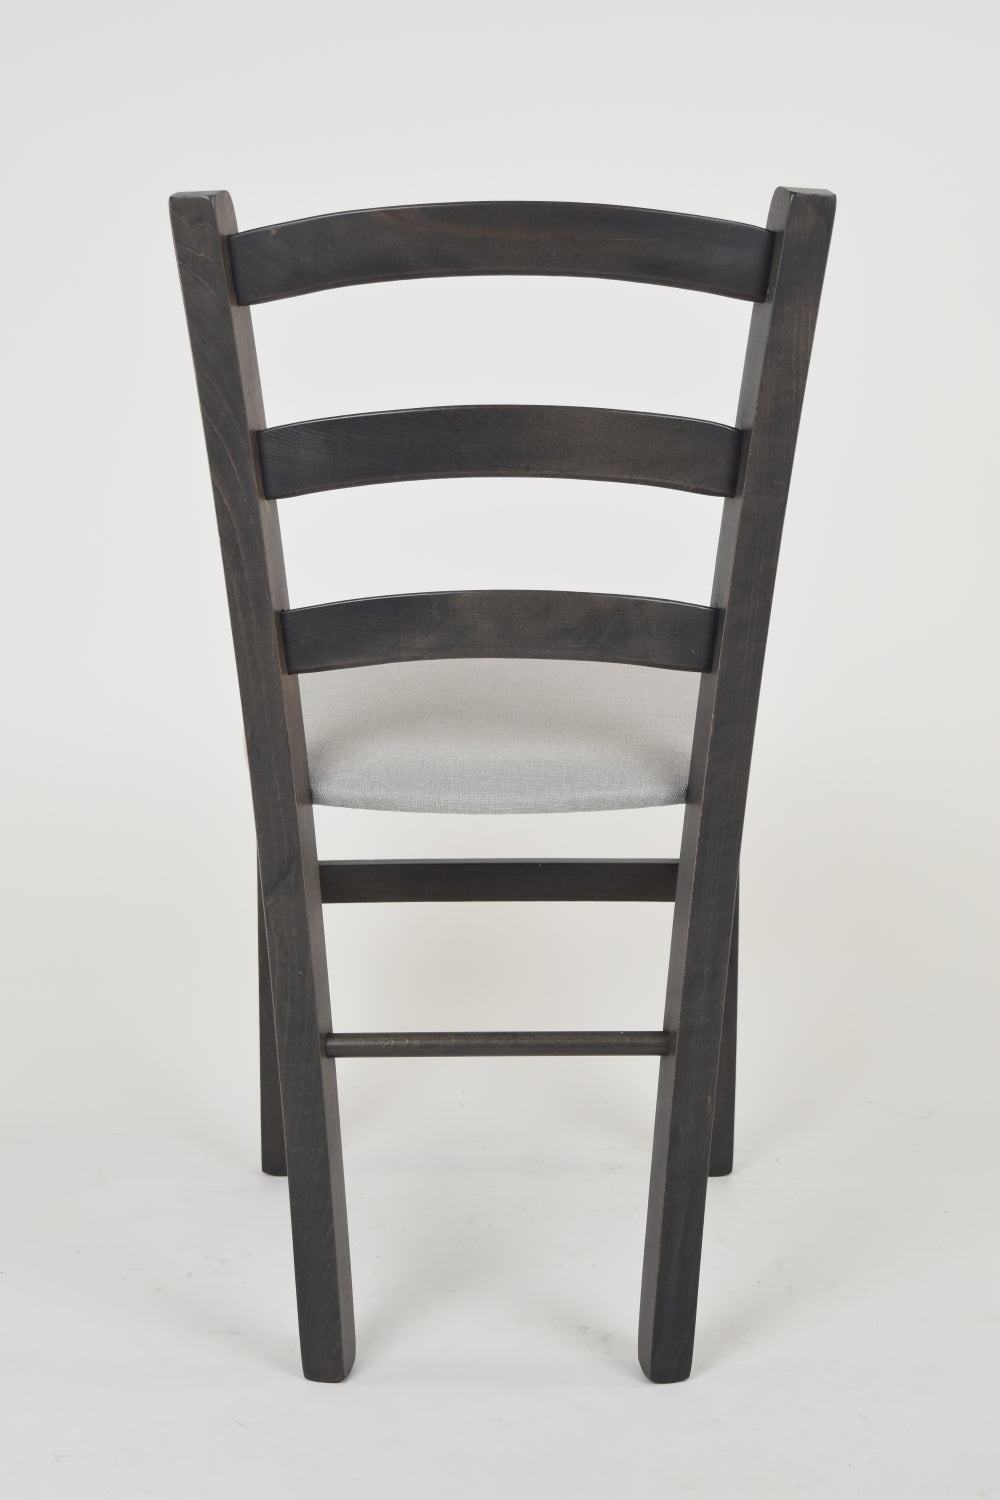 Tommychairs - Set 2 sillas de Cocina y Comedor Venice, Estructura en Madera de Haya anilina Gris Oscuro y Asiento tapizado en Tejido Gris Perla